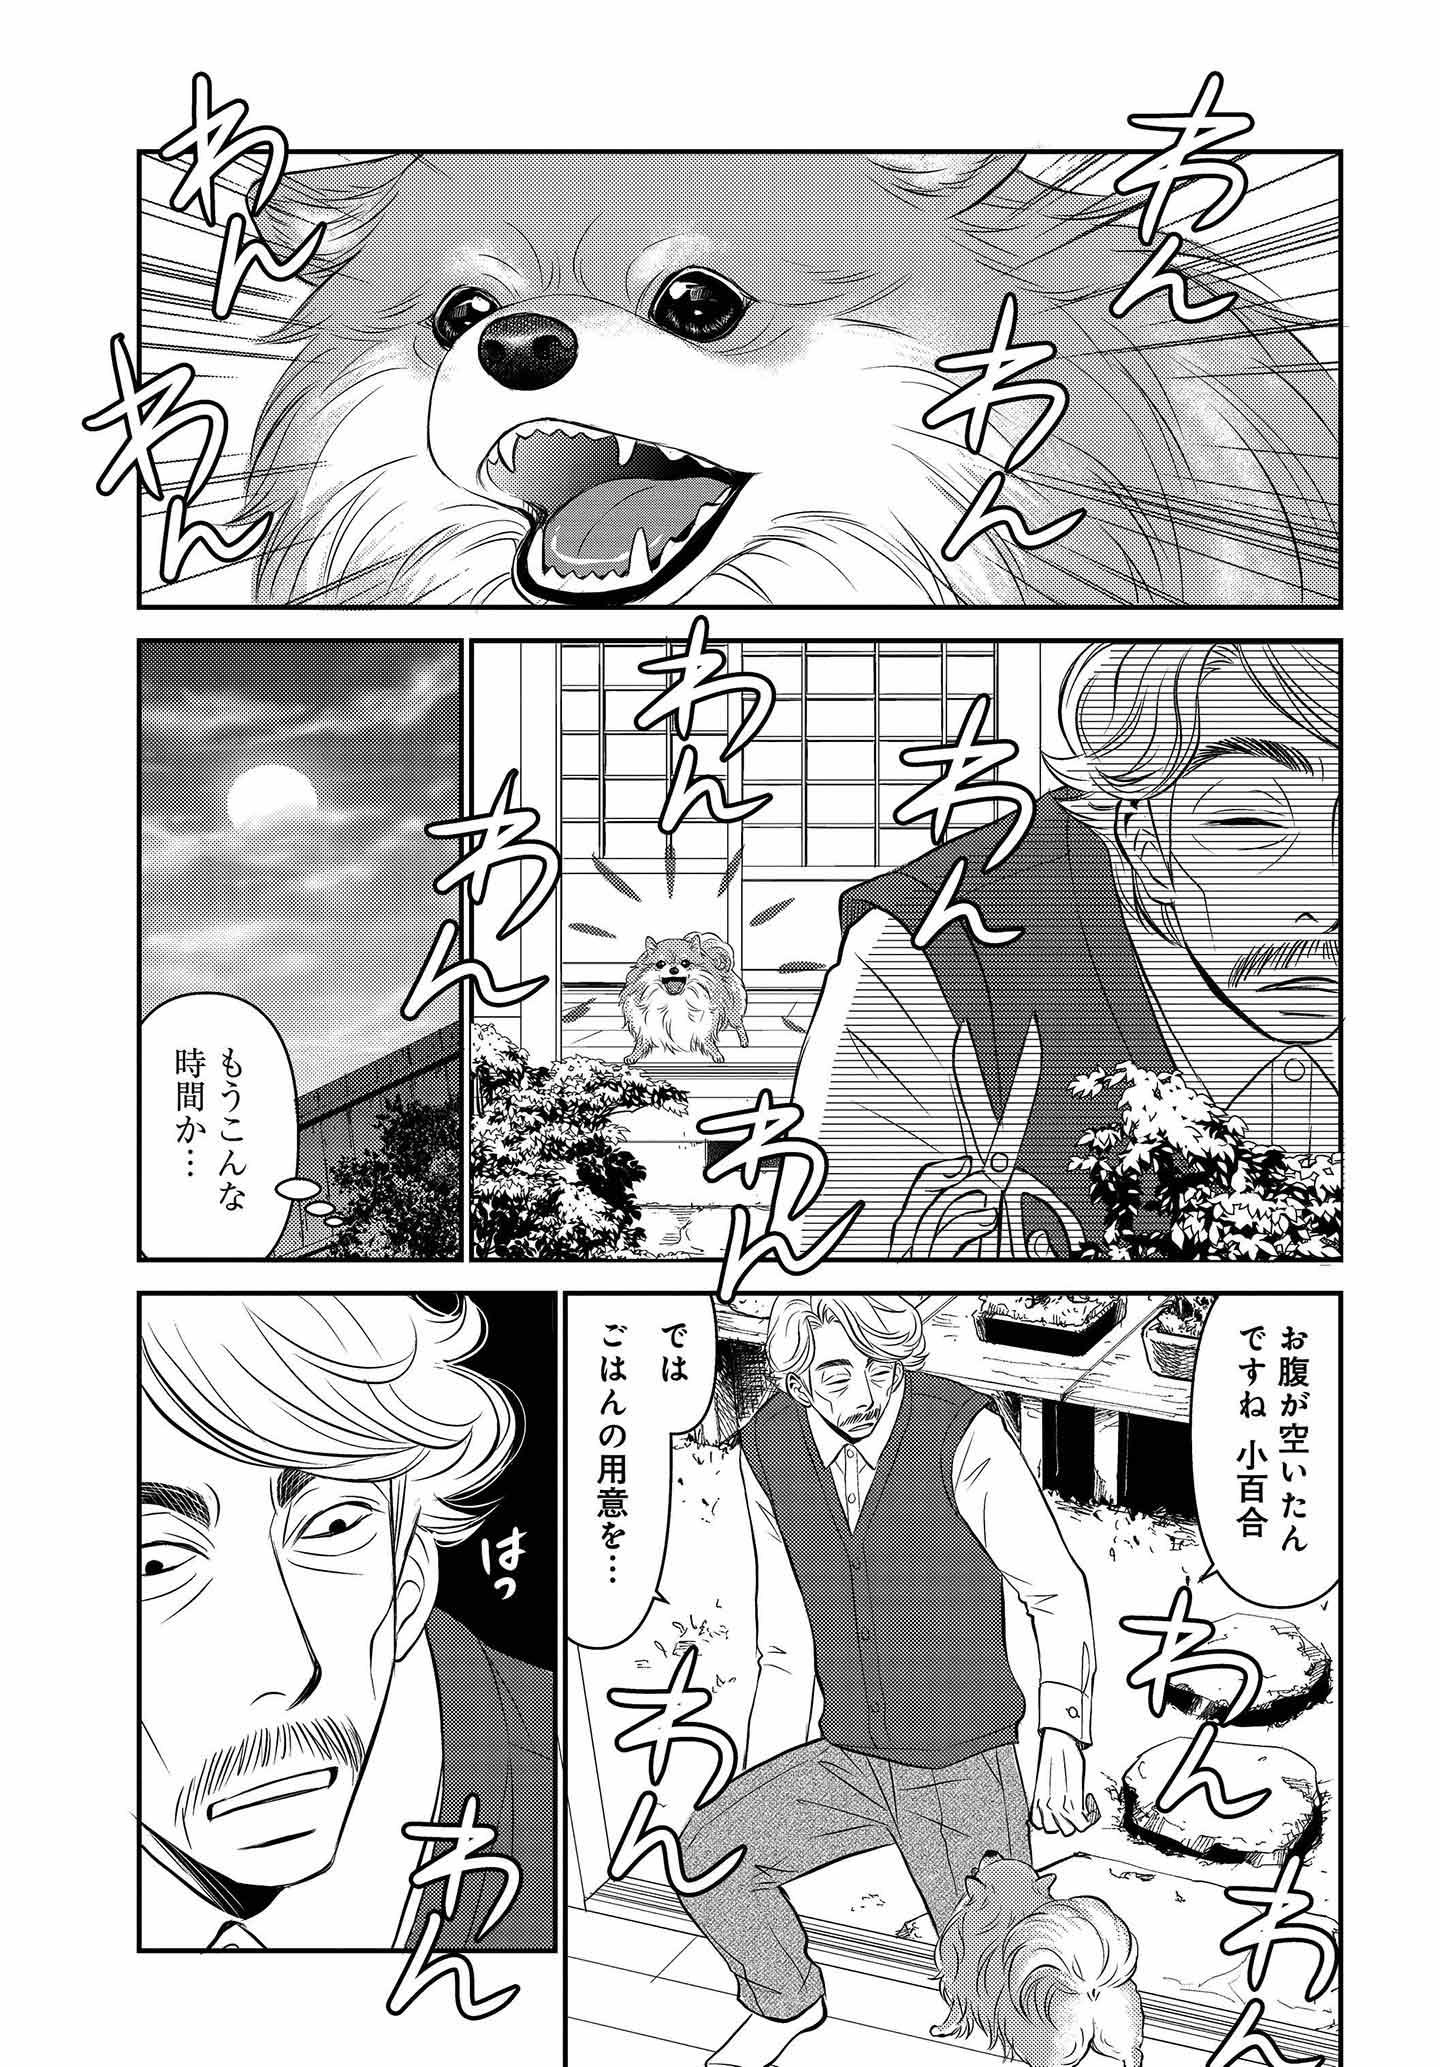 ドッグトレーニング漫画『DOG SIGNAL』32話目　3/4